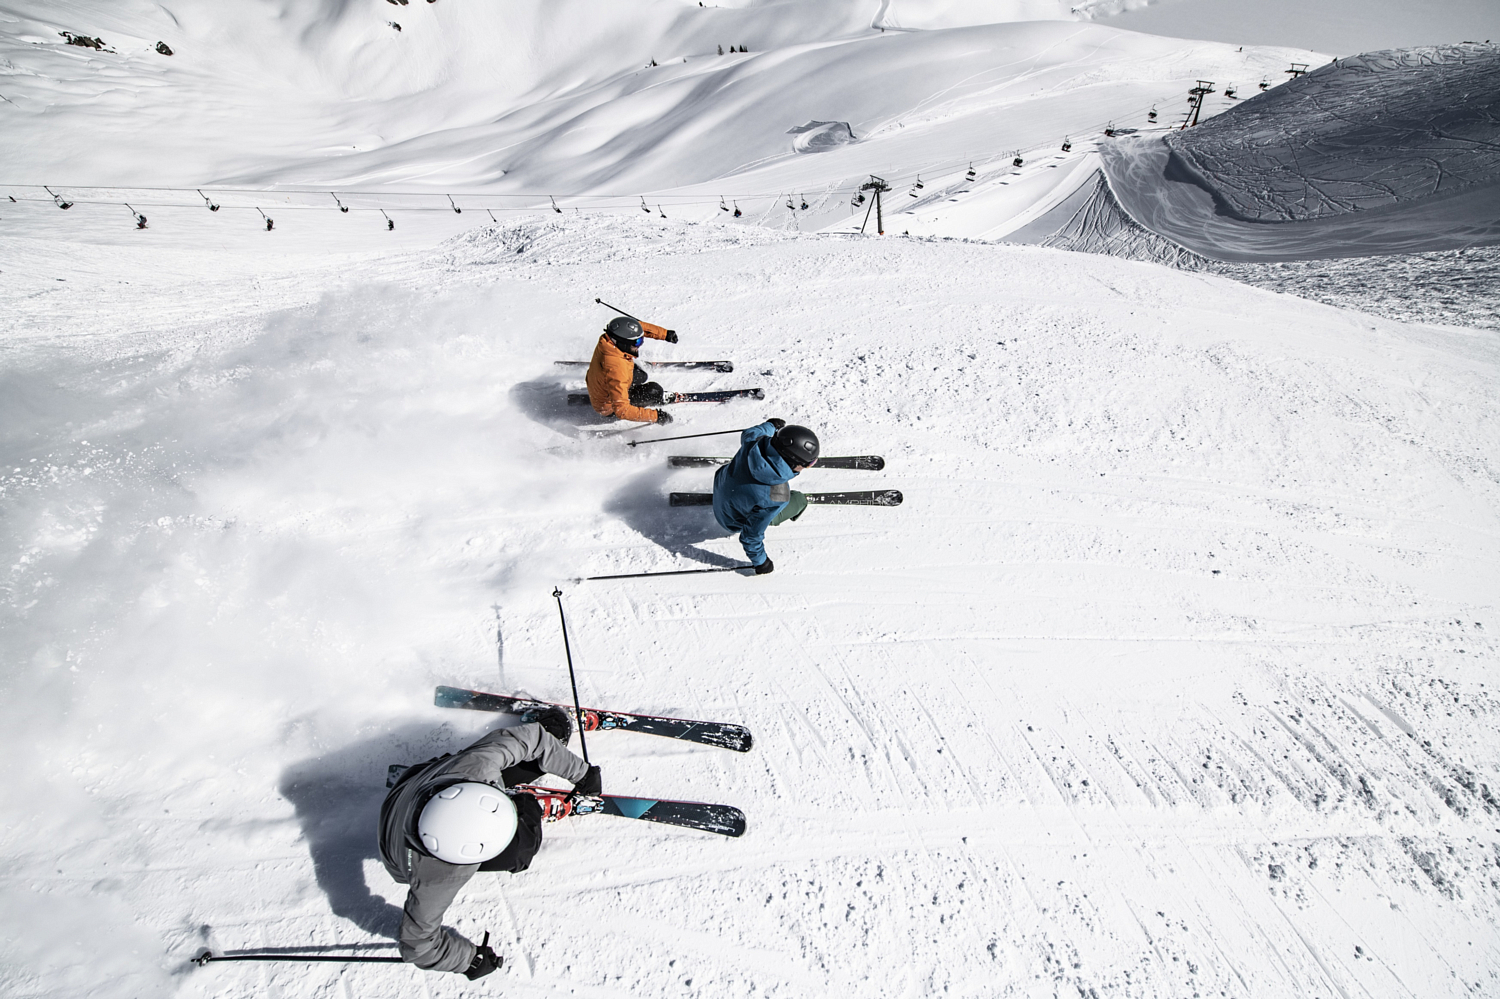 Горные лыжи с креплениями ELAN Amphibio 18Ti2 FusionX + EMX 12 FusionX